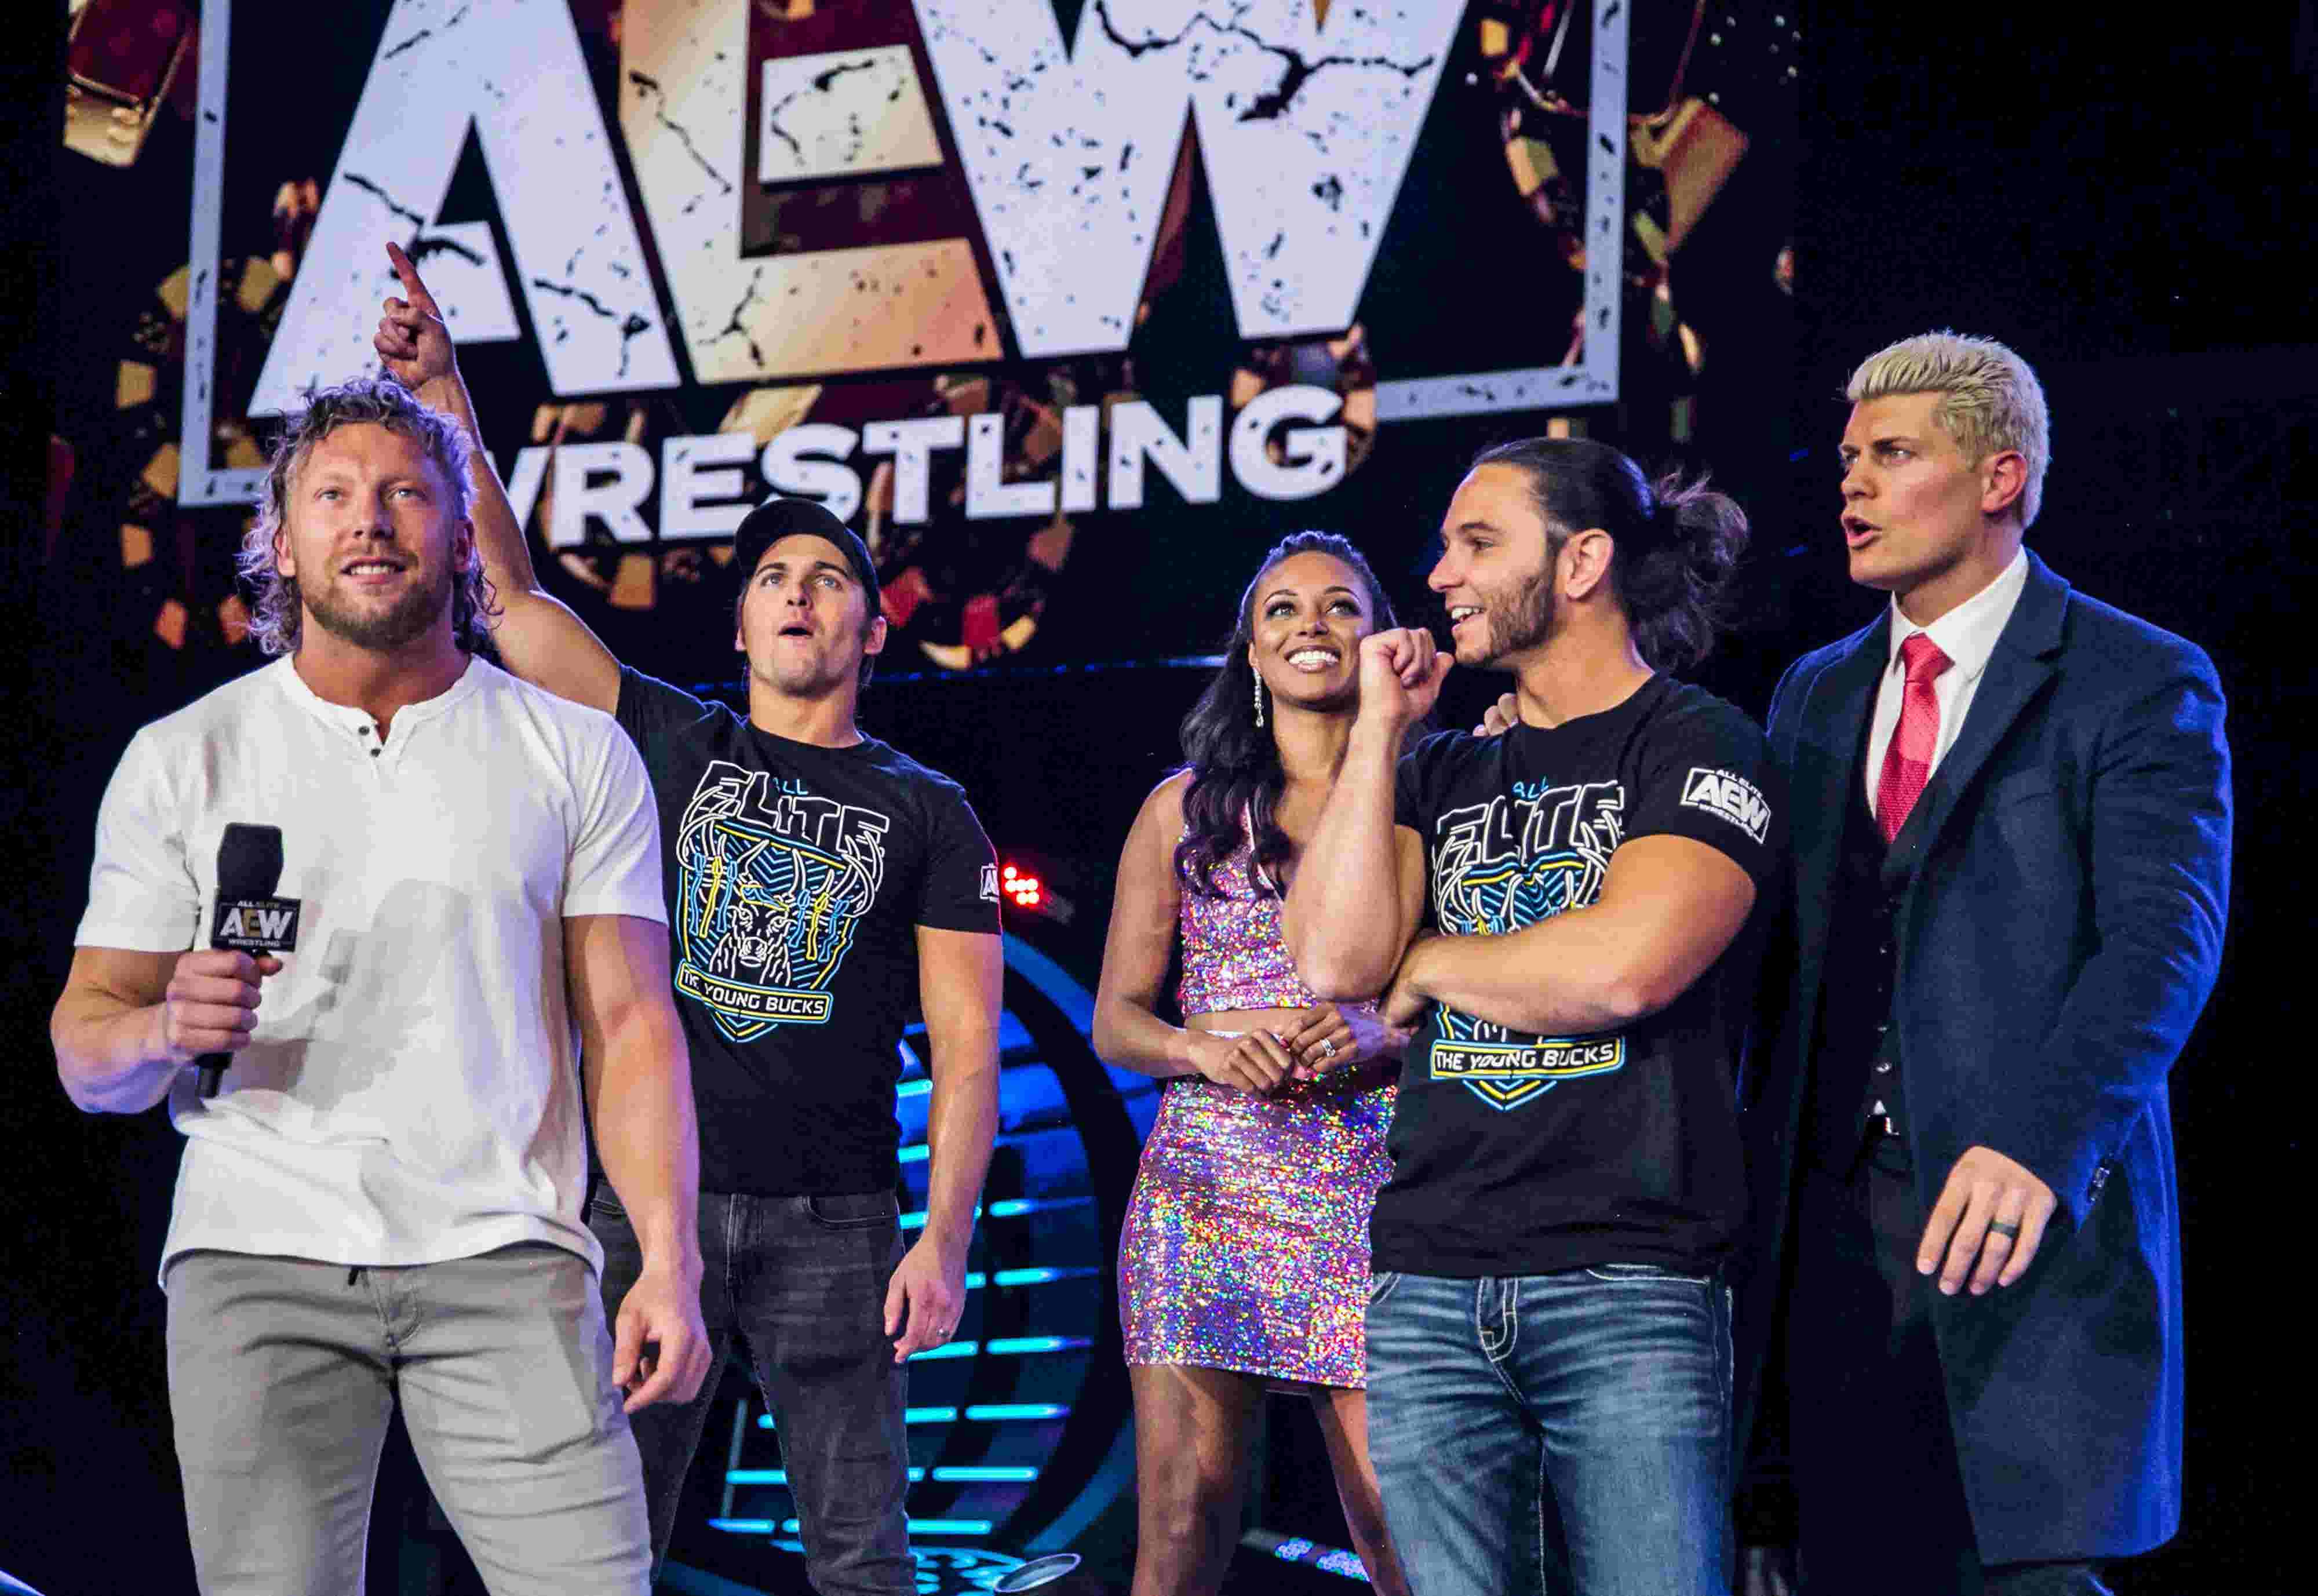 Piledriver: AEW brings Saturday TV wrestling back